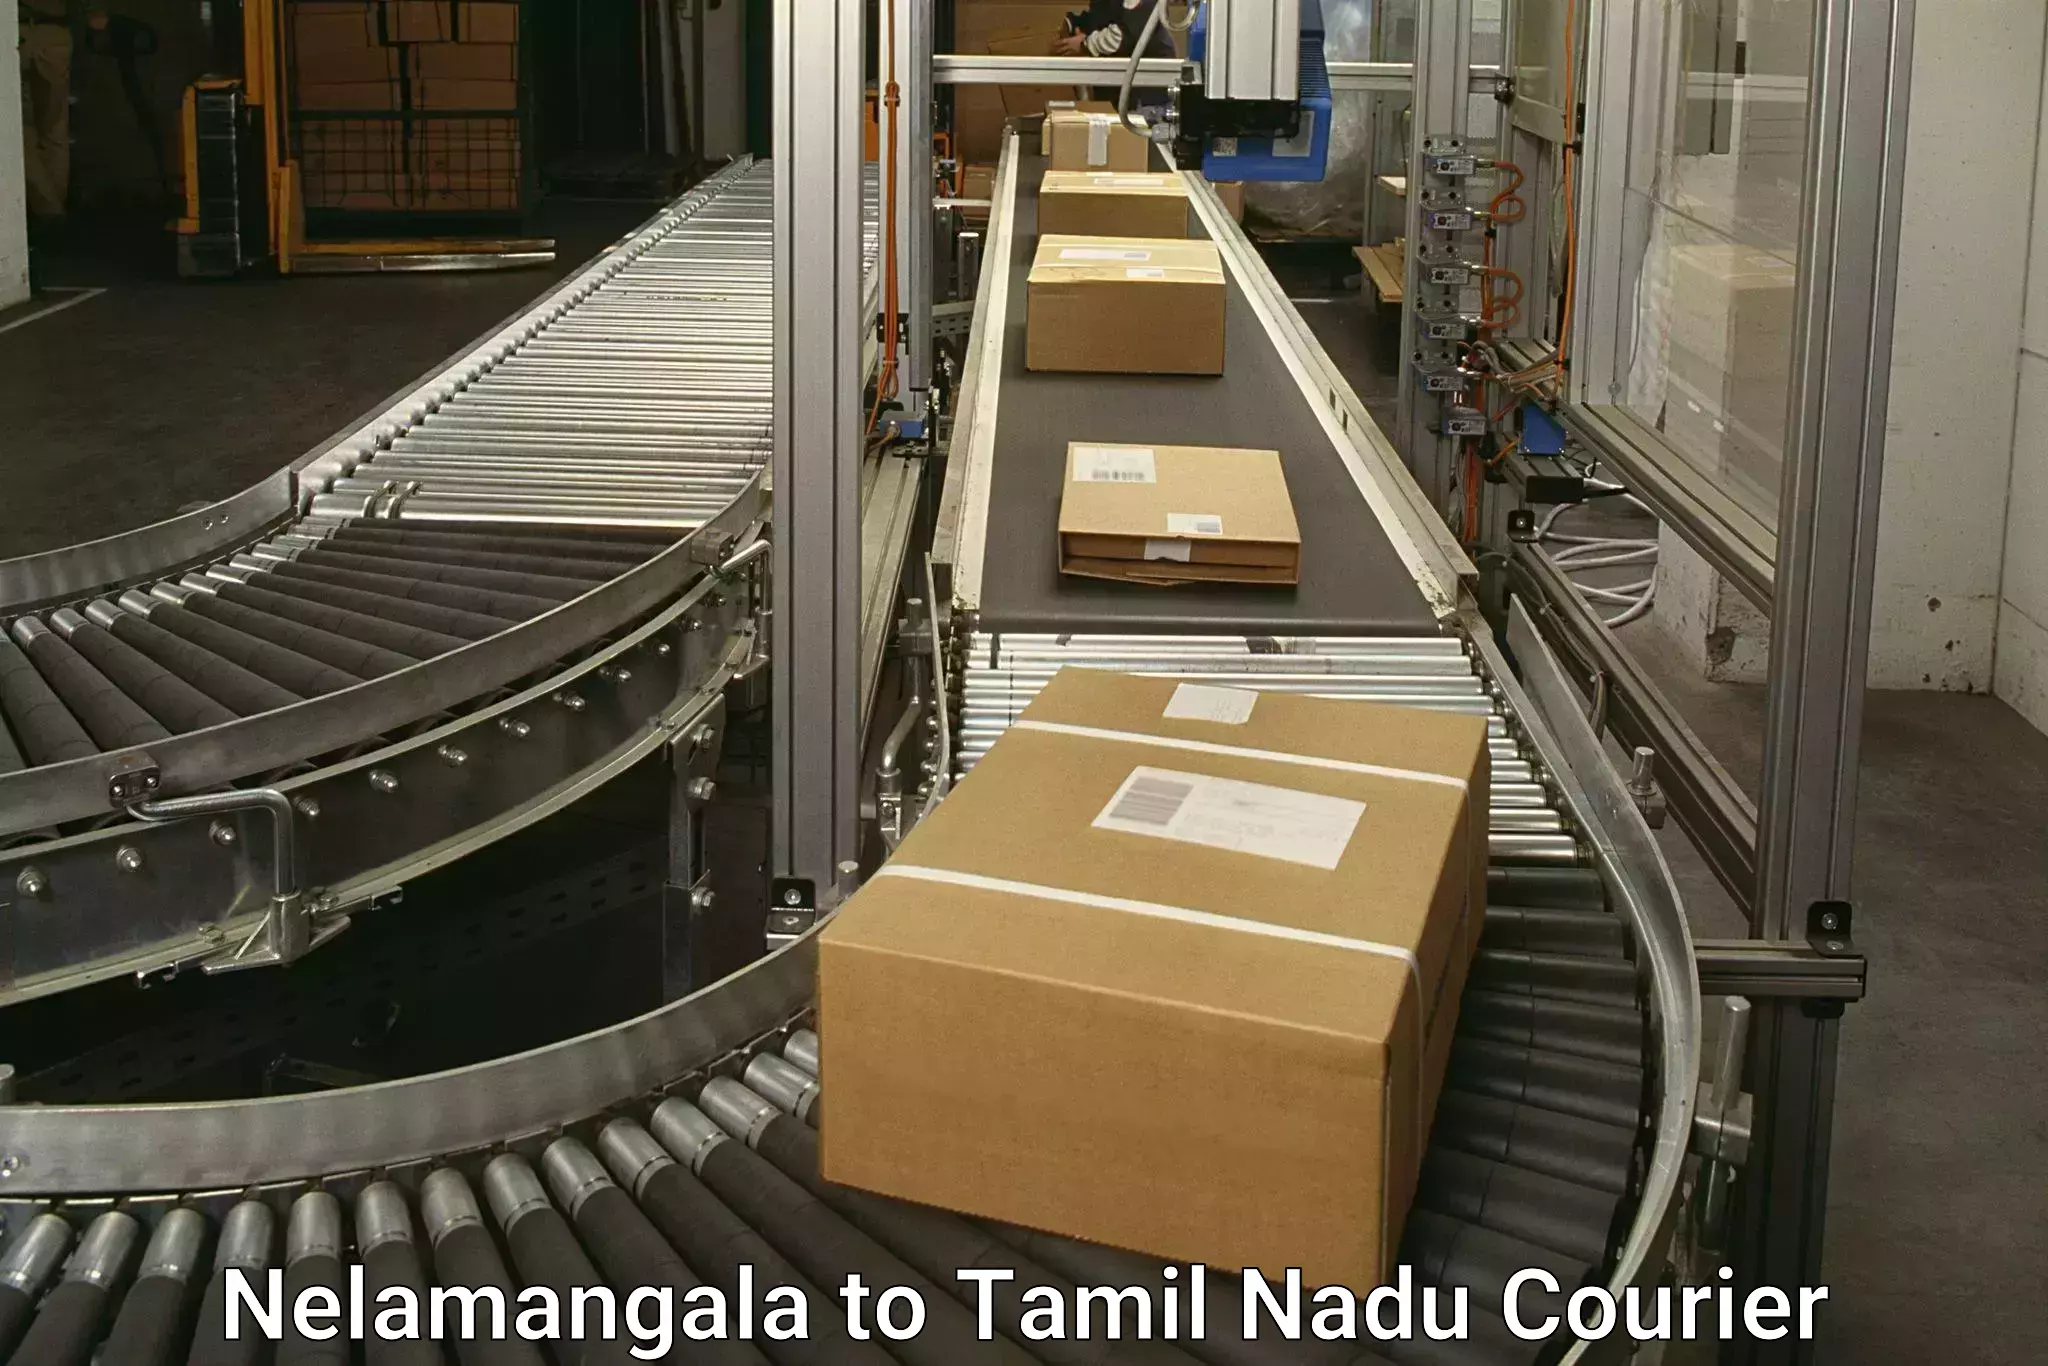 Urban courier service Nelamangala to Tamil Nadu